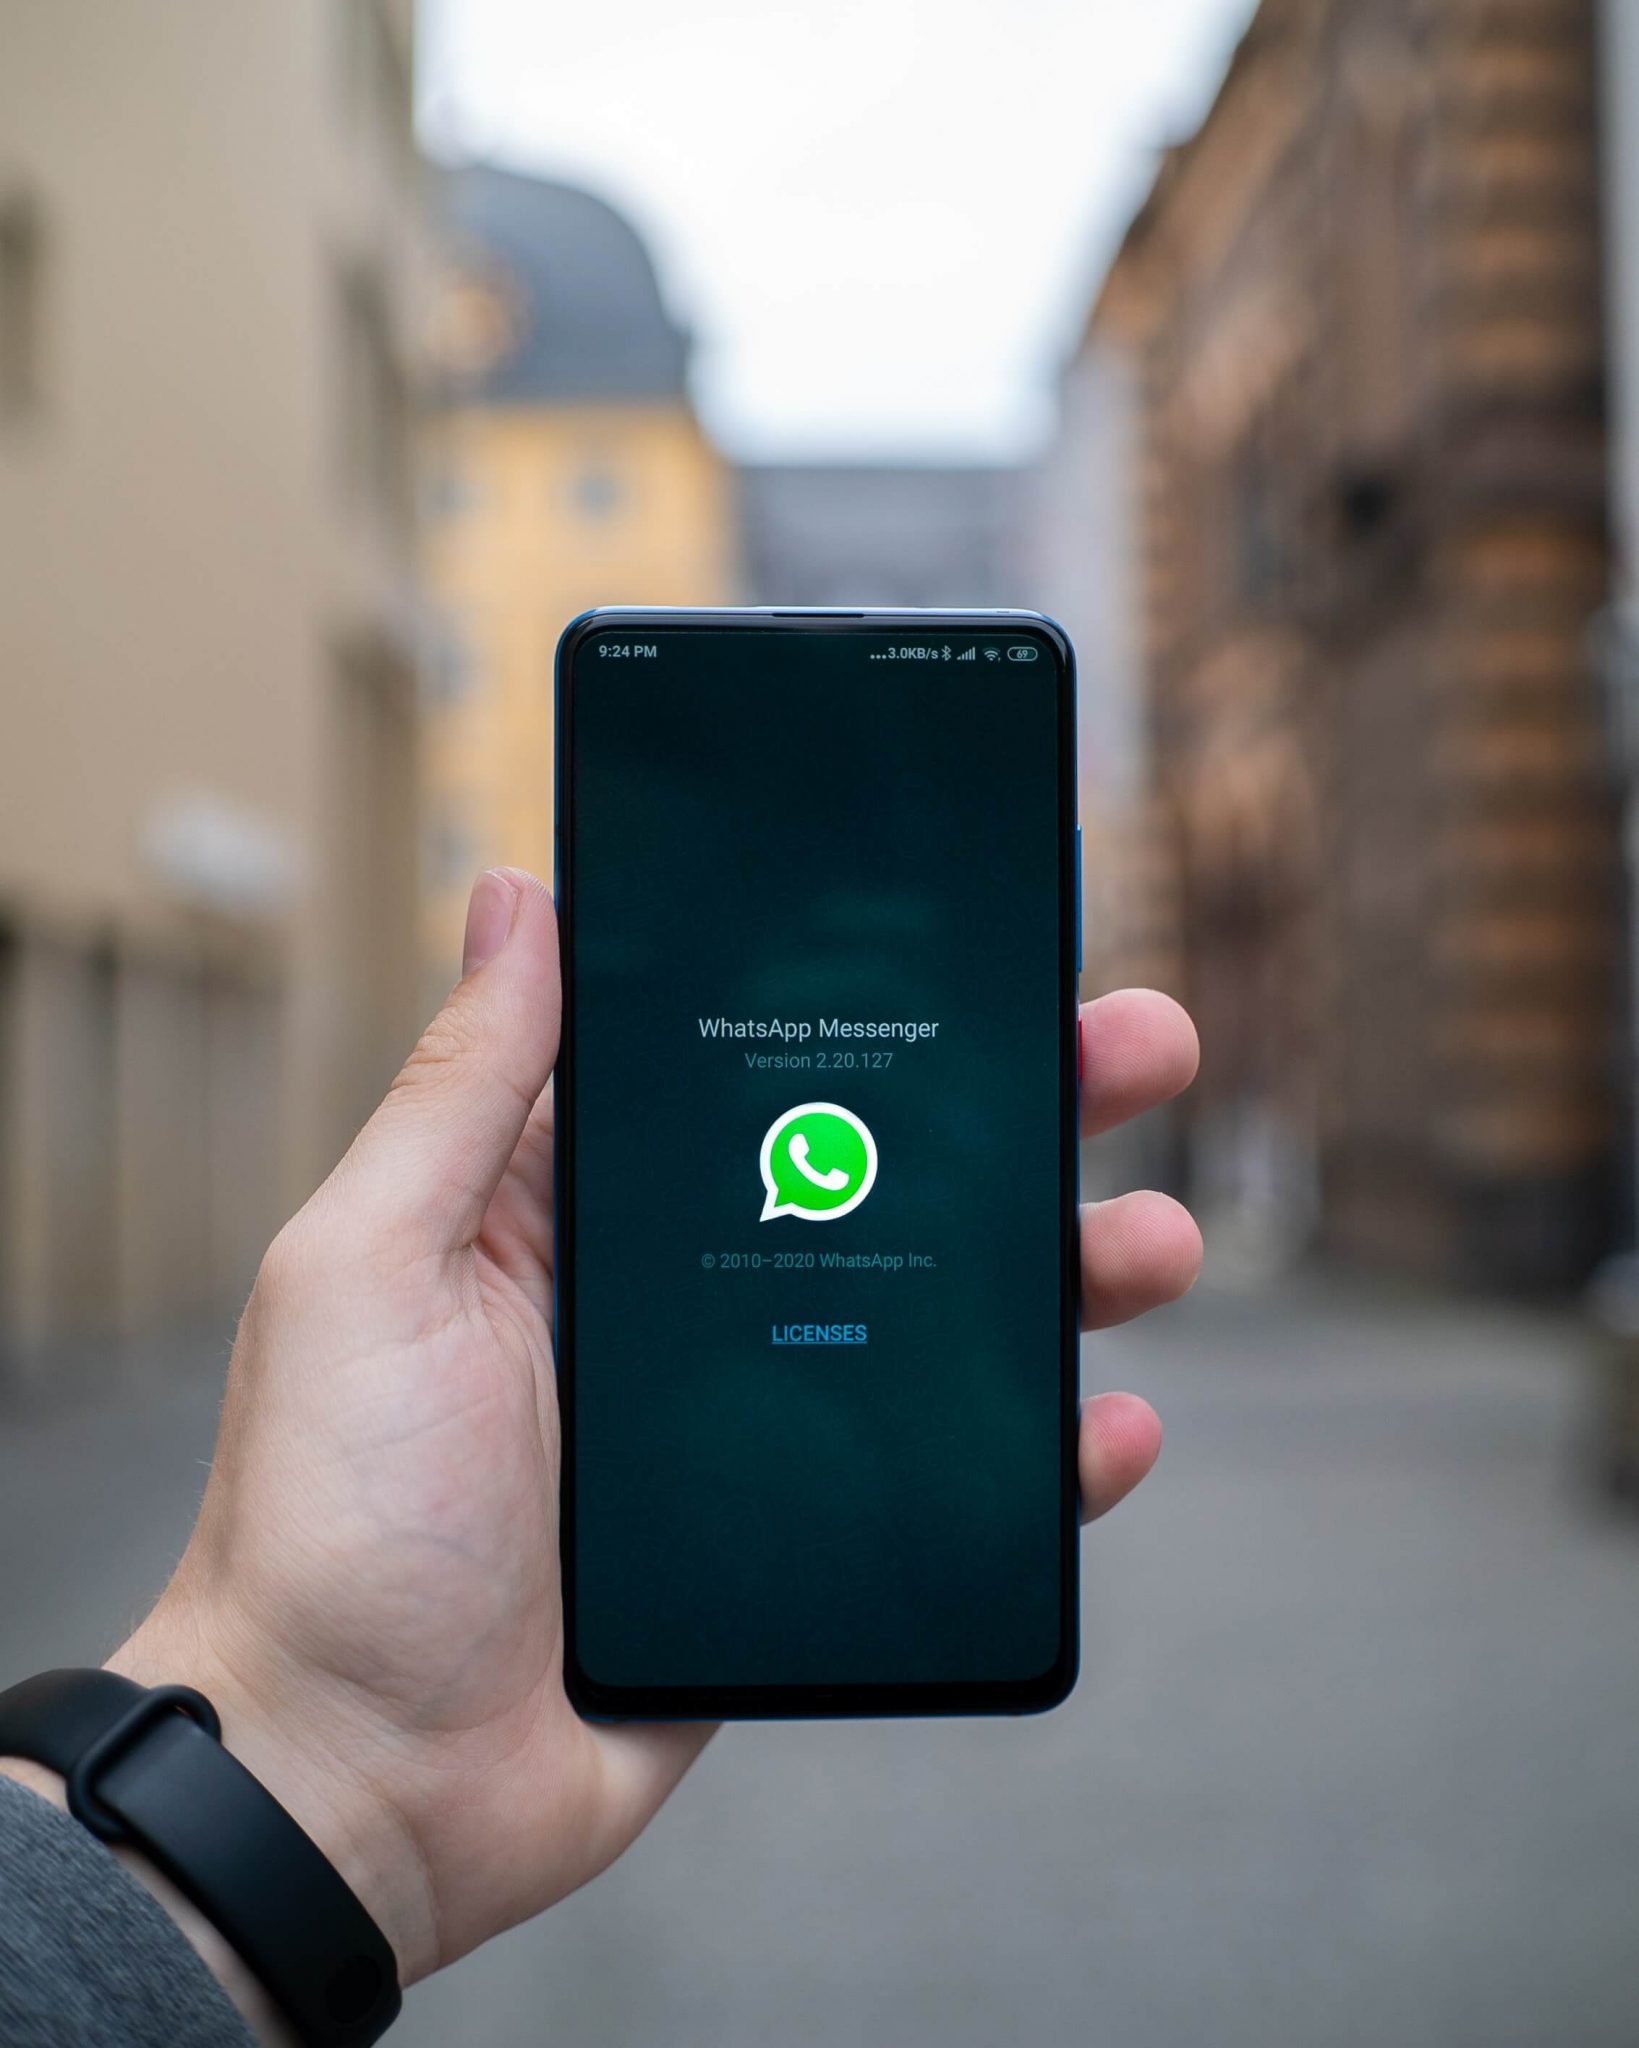 واتساب WhatsApp: كيفية إرسال رسالة إلى رقم غير محفوظ دون إضافة جهة اتصال